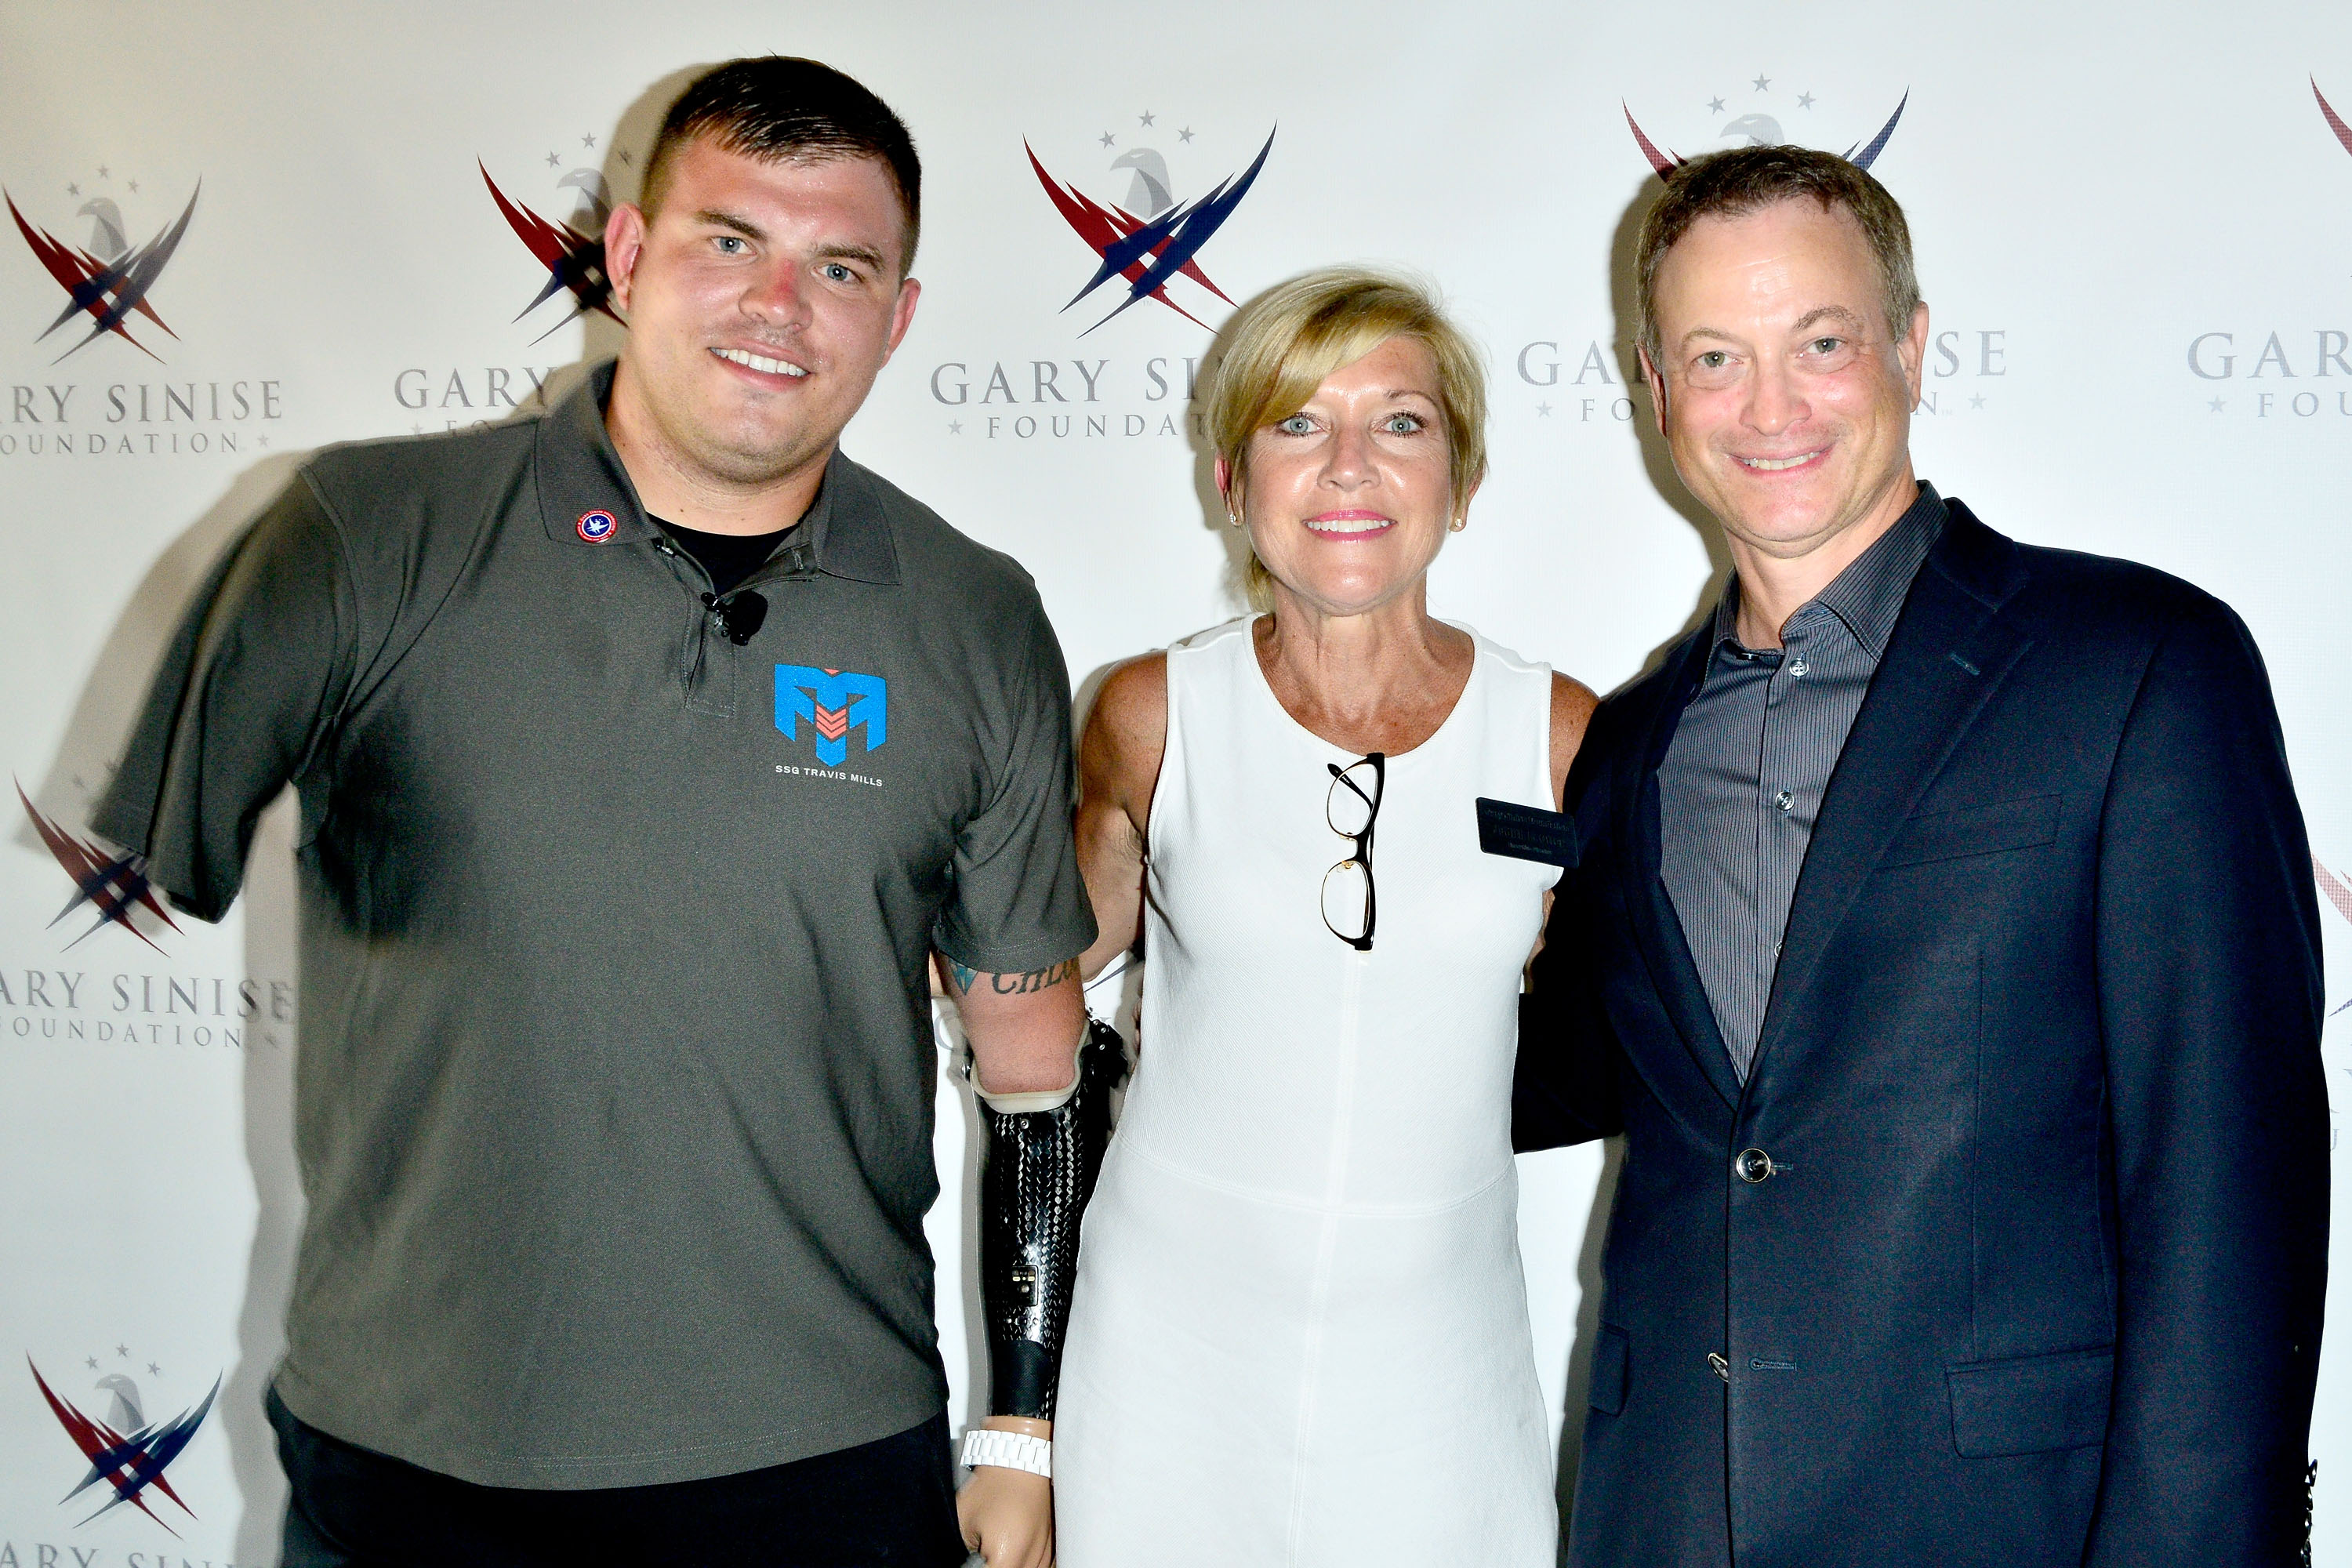 Travis Mills, la Directora Ejecutiva de la Fundación Gary Sinise, Judy Otter, y Gary Sinise asisten a la proyección benéfica "Travis: A Soldier's Story" en Coronado, California, el 8 de julio de 2014. | Fuente: Getty Images